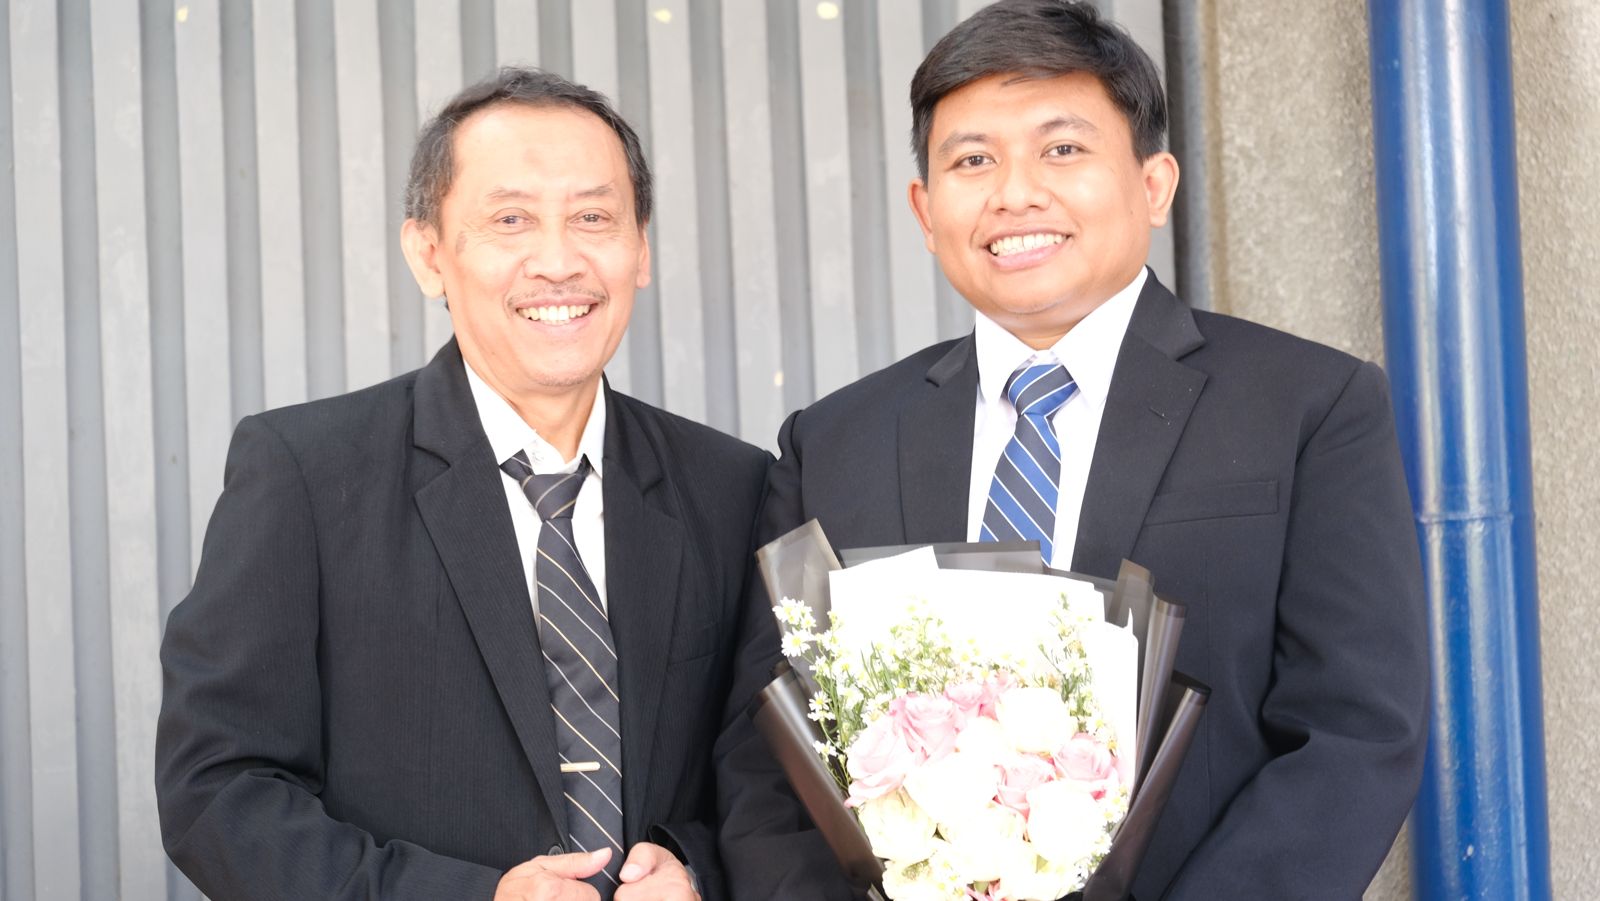 Gambar Muhammad Taufiqi (kanan) bersama dosen pembimbingnya Prof Drs Agus Purwanto MSi MSc DSc usai sidang promosi doktor di ITS